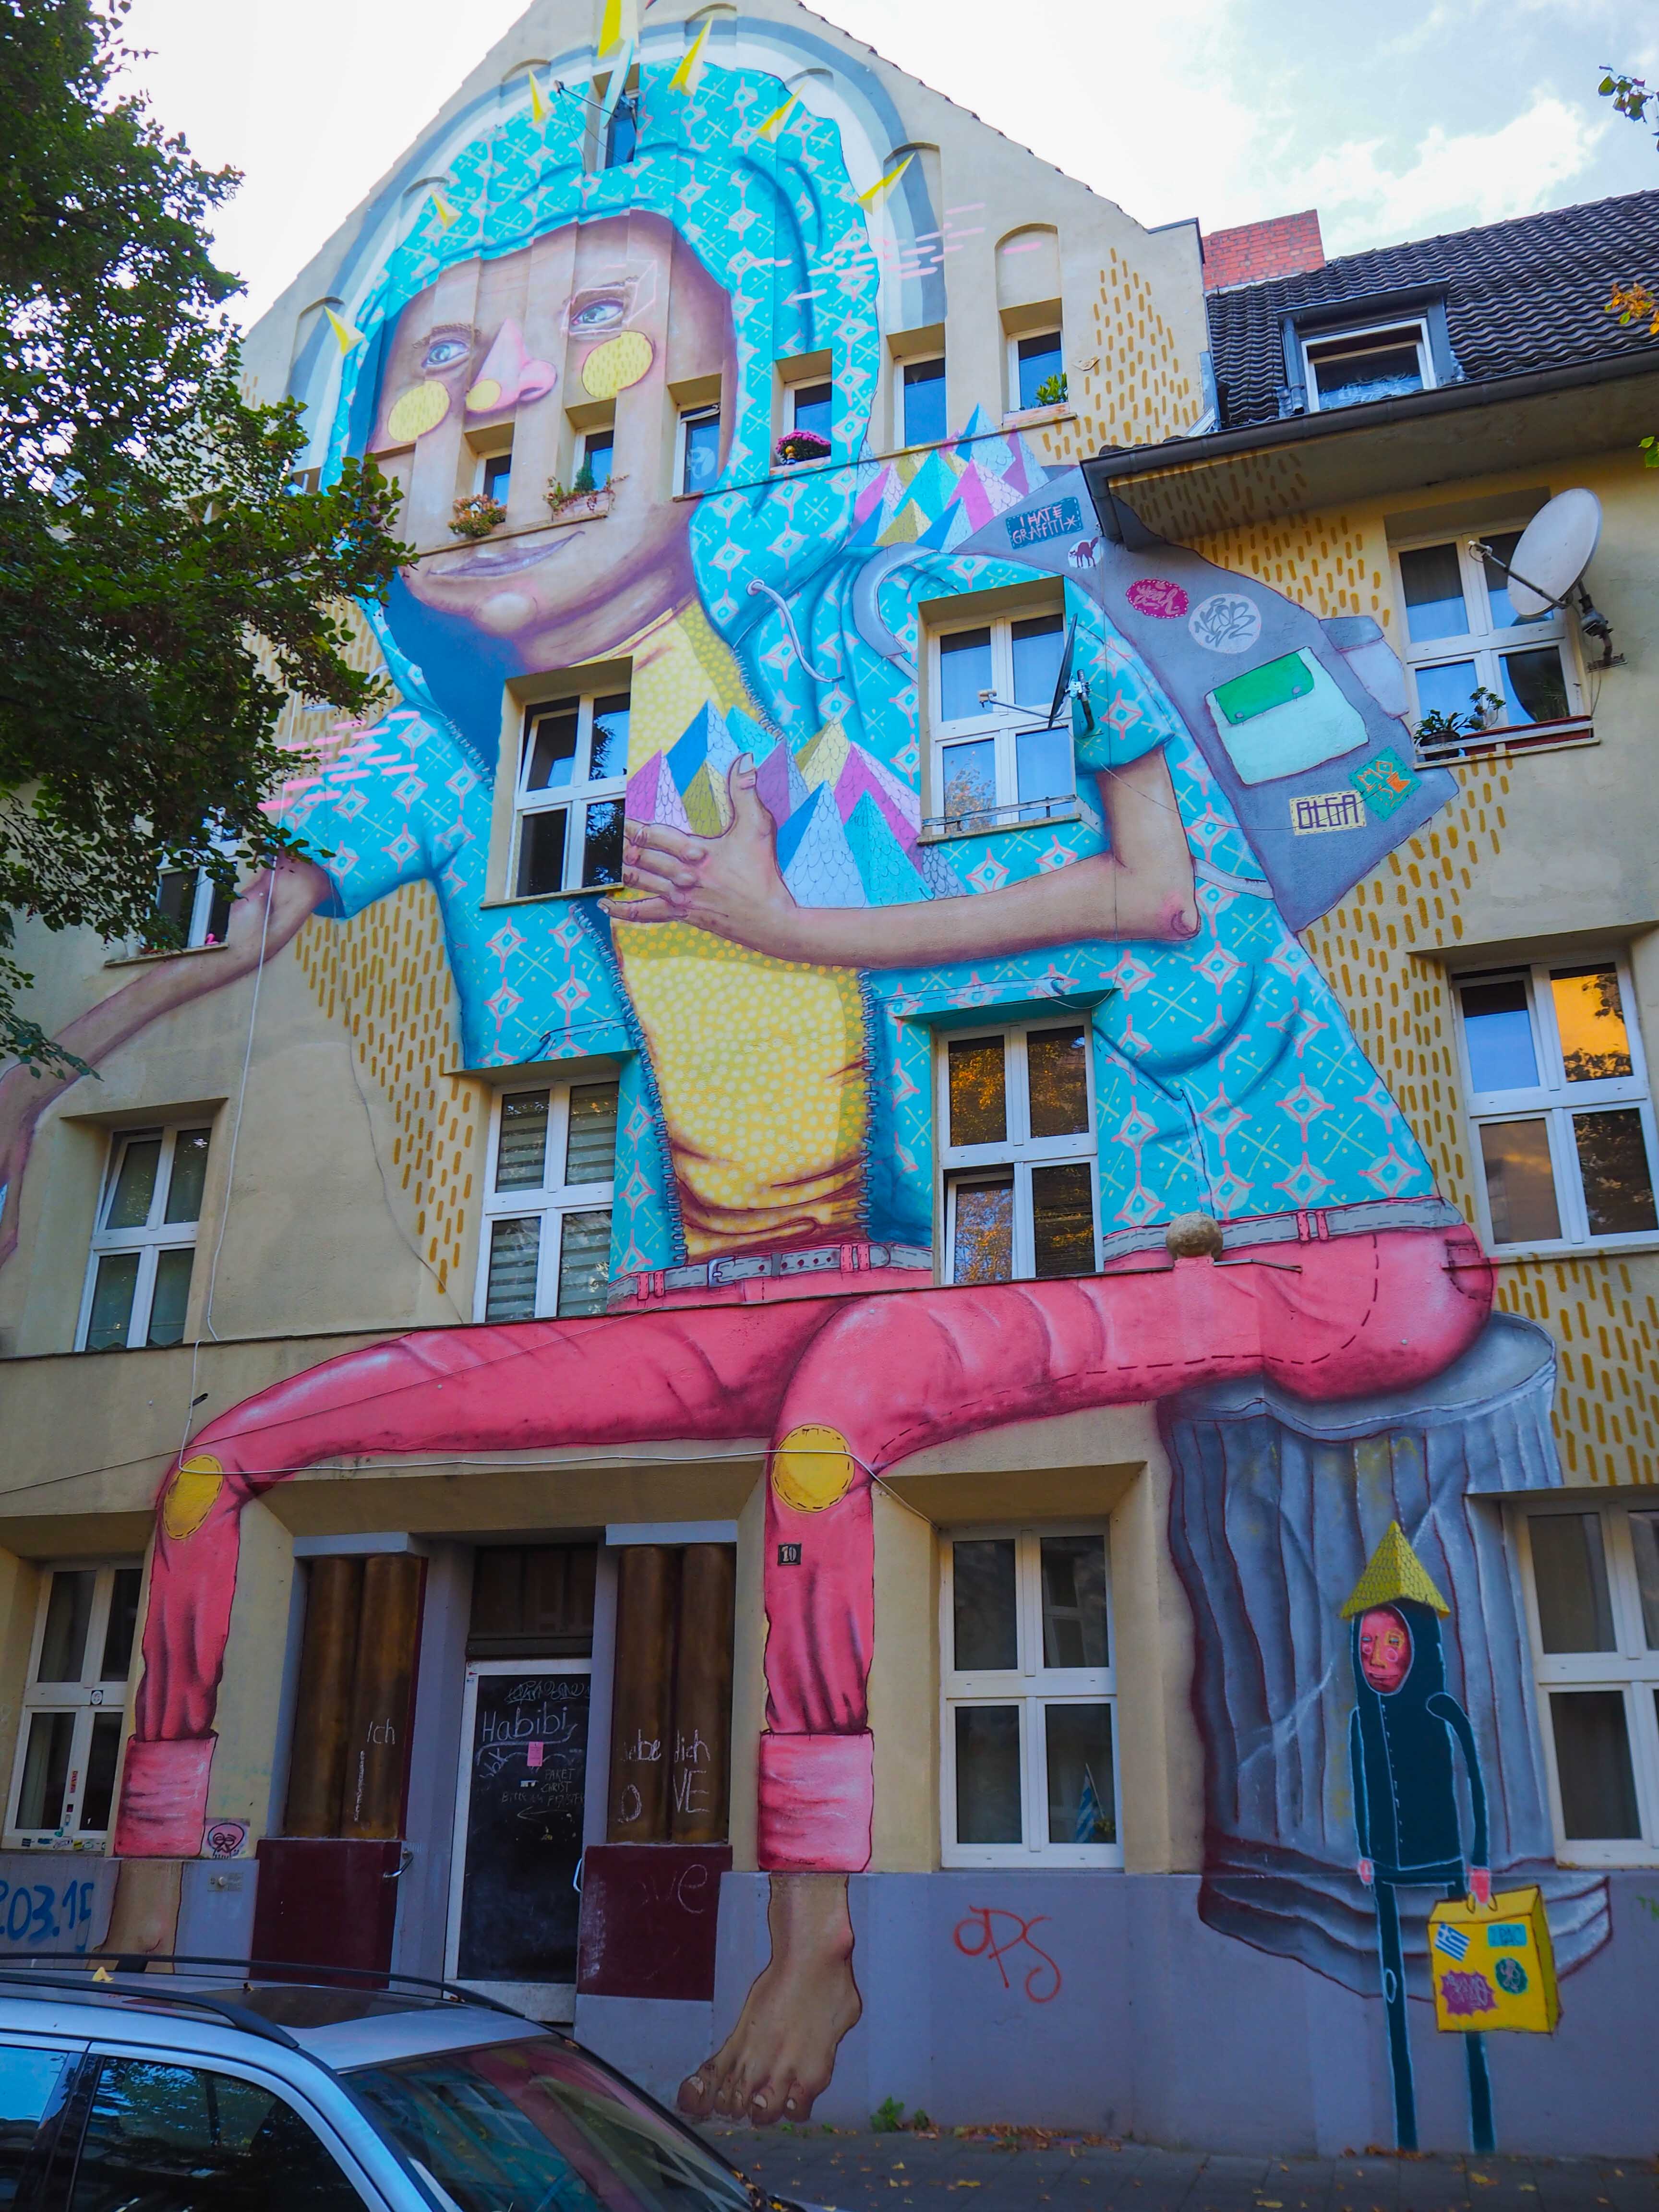 Os Gémeos hat eine überdimensional große Figur auf eine Hausfassade gemalt